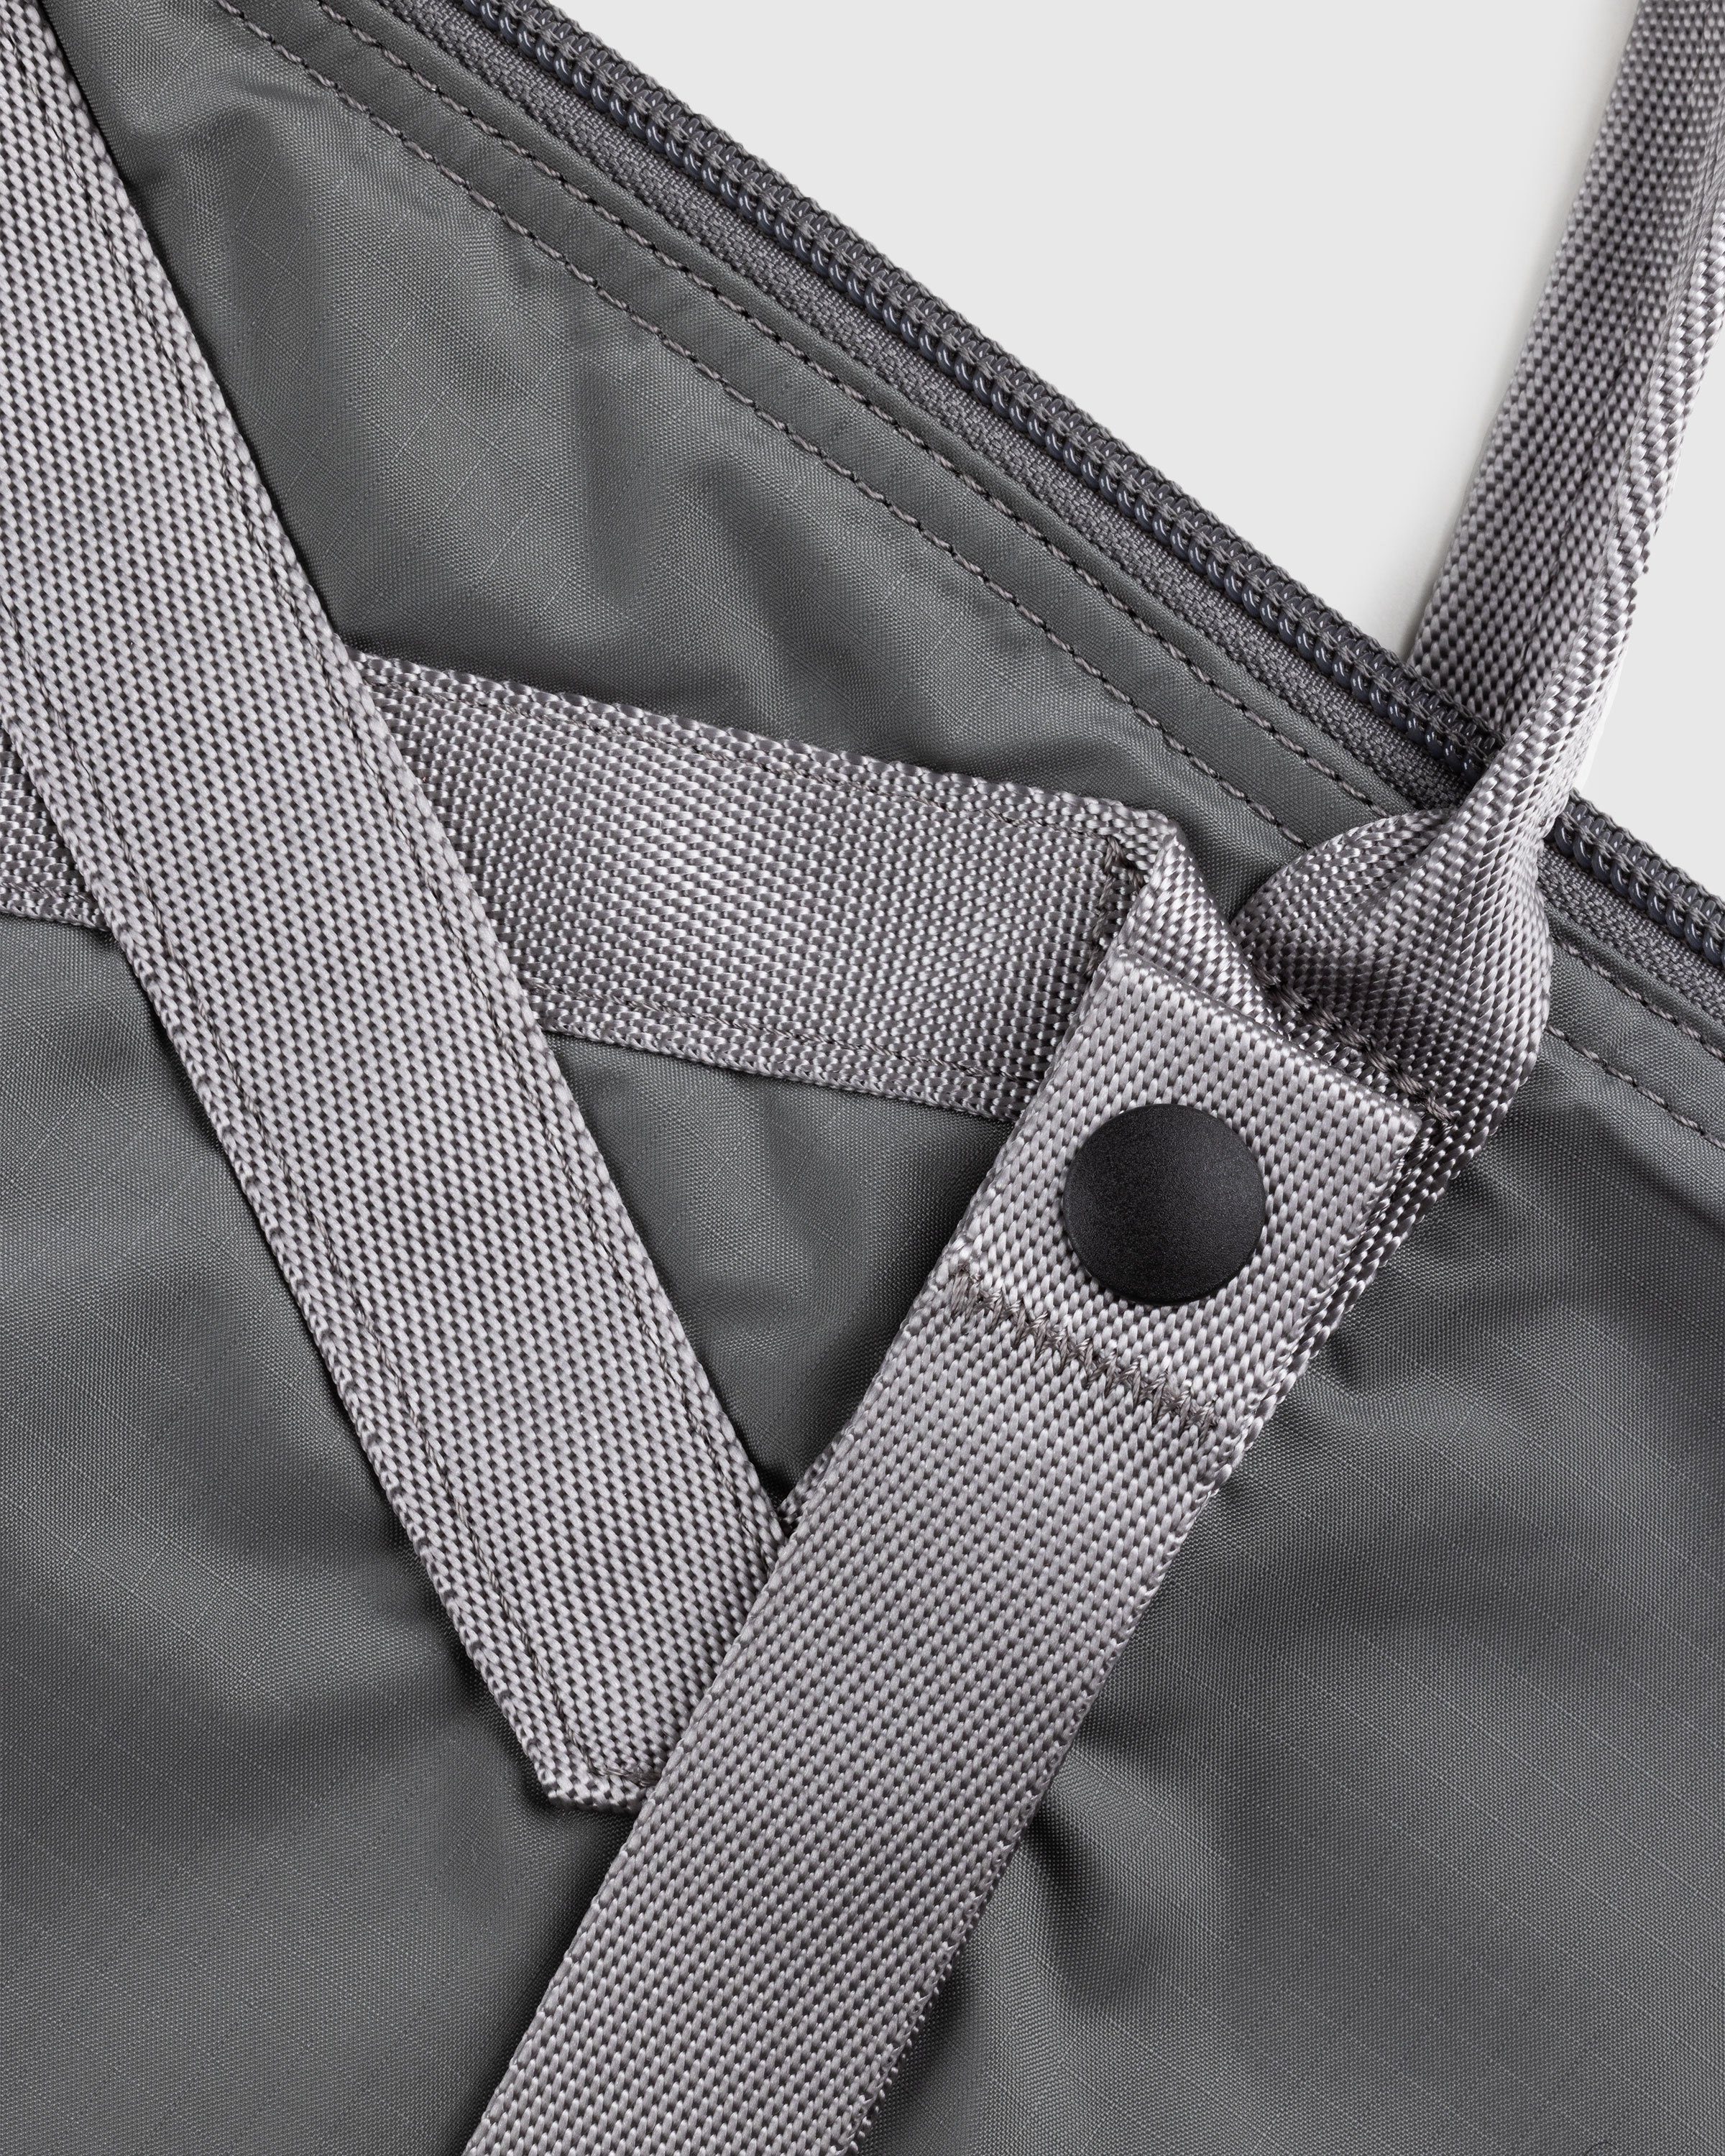 Porter-Yoshida & Co. - Flex 2-Way Tote Bag Grey - Accessories - Grey - Image 6